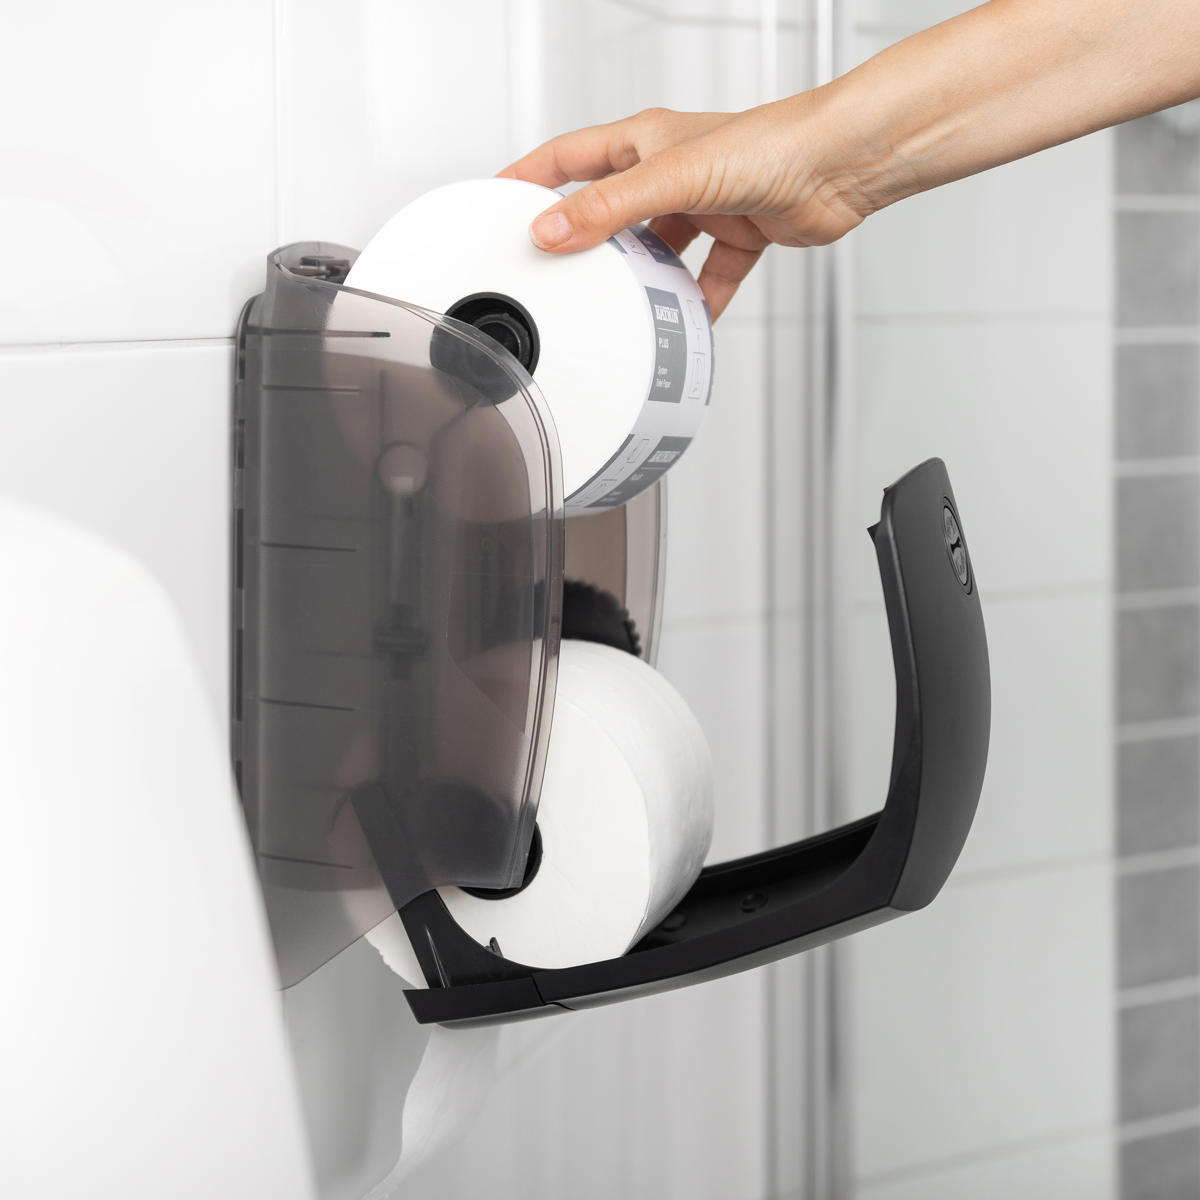 Dávkovač je možné doplniť počas používania druhého kotúča. To znamená, že toaletný papier bude vždy k dispozícii.